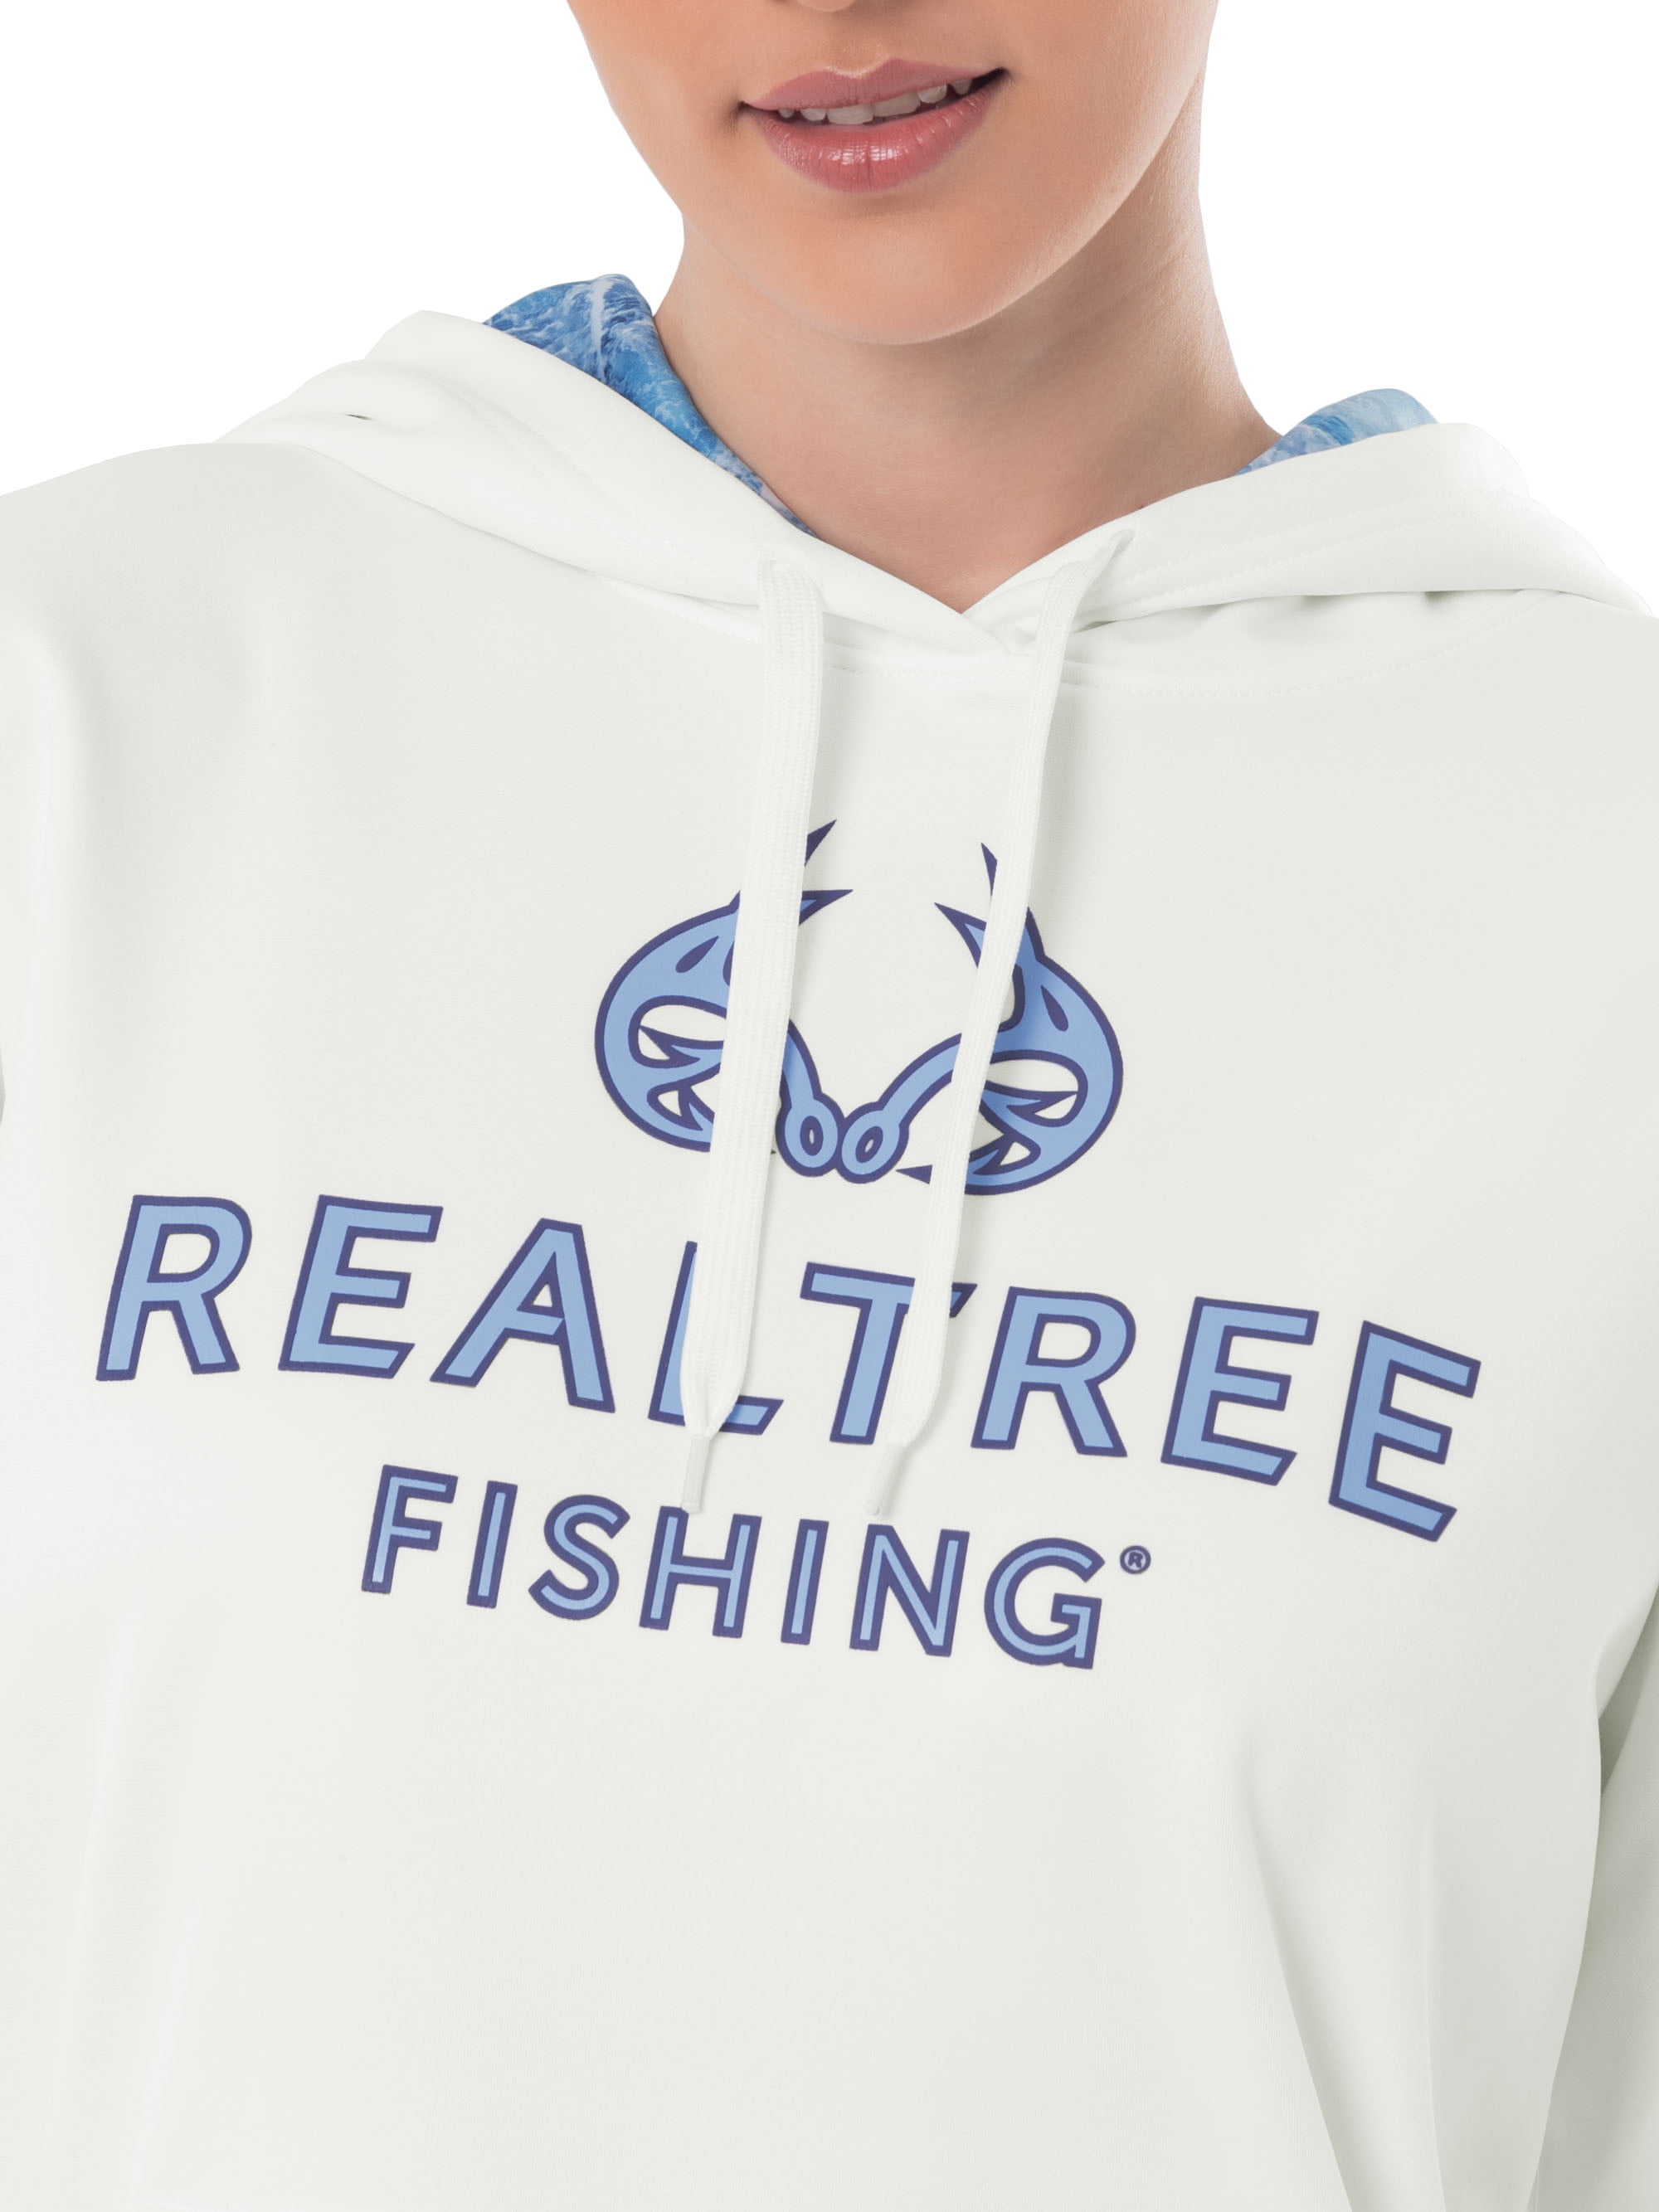 Fishing Club Clothing  Custom Fishing Club T-Shirts, Hoodies